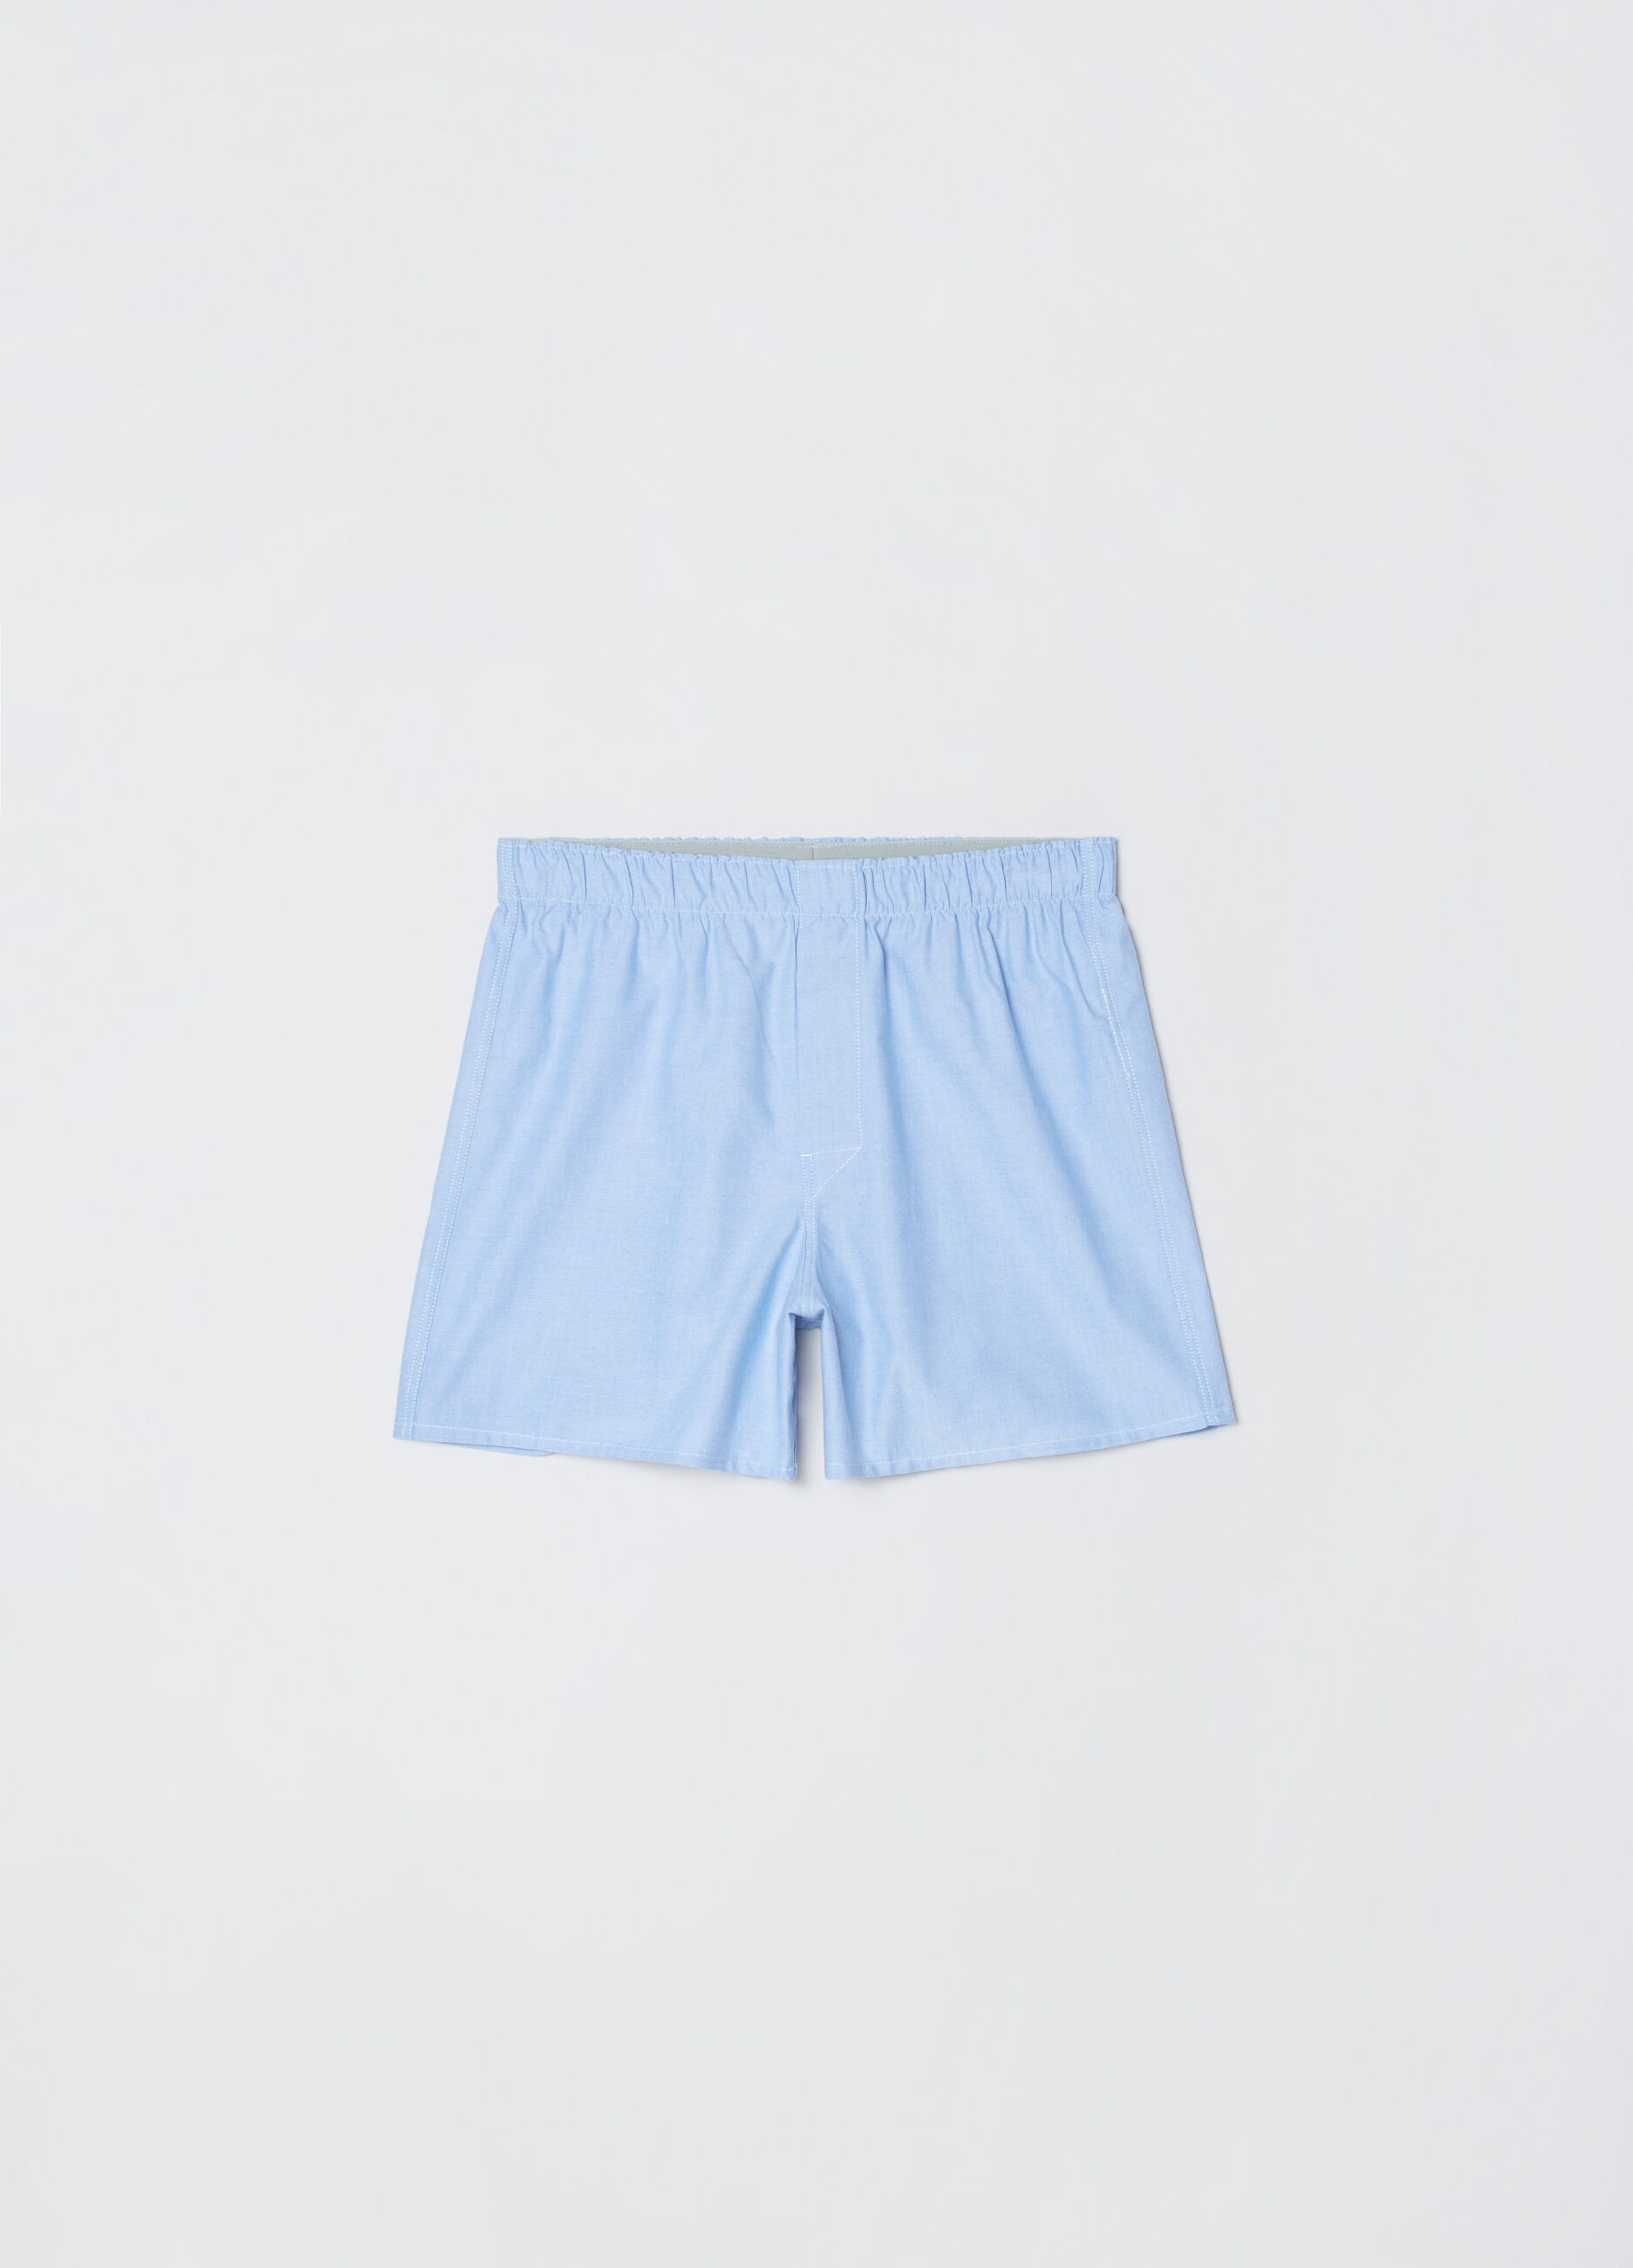 Woven cotton boxer shorts